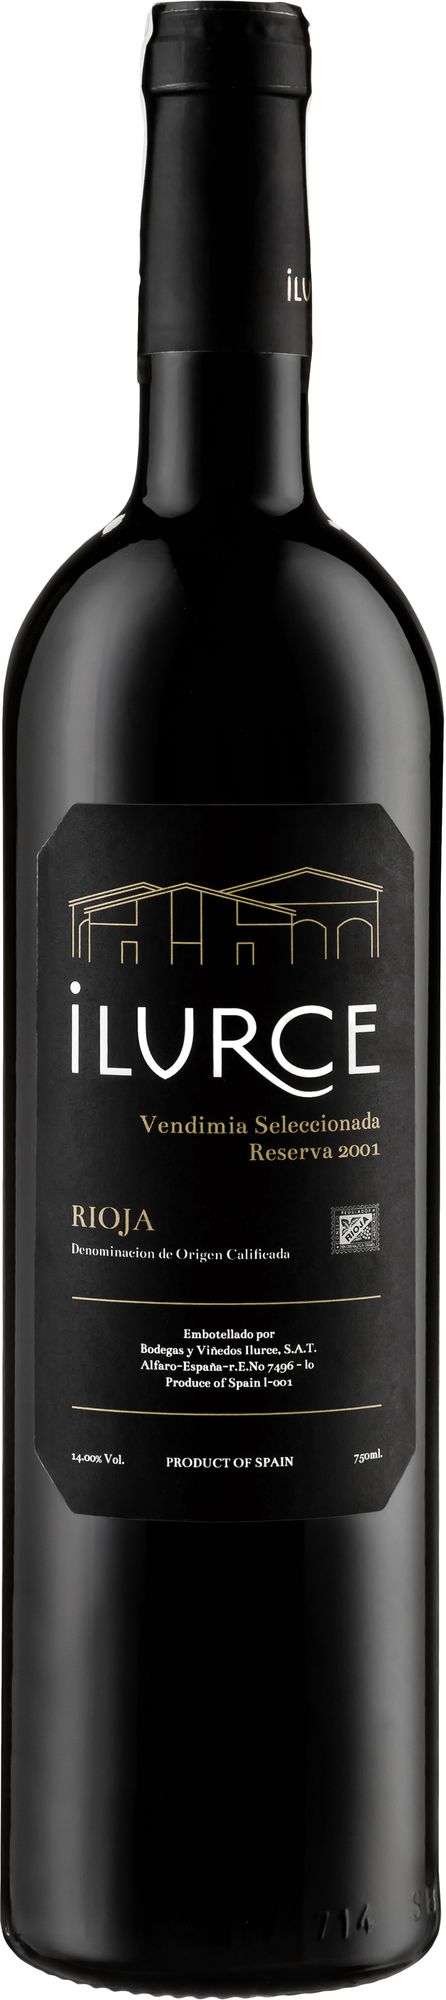 Wino Ilurce Reserva Vendimia Seleccionada Rioja DOCa